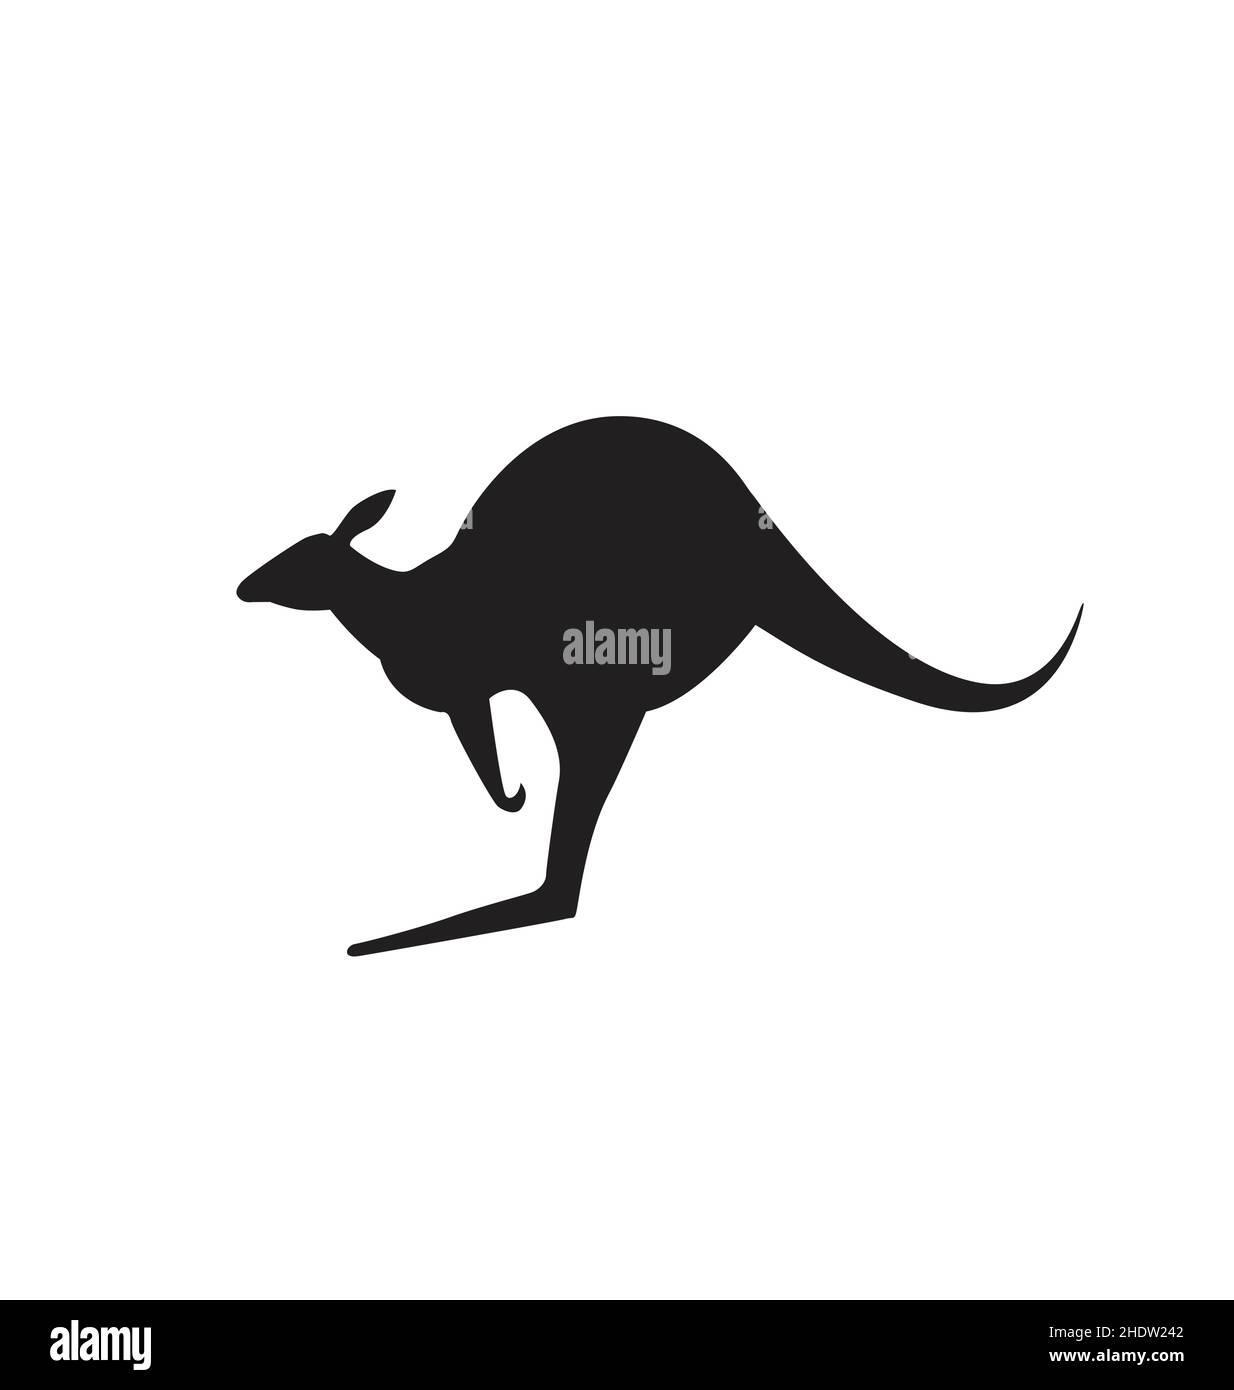 Klassischer australischer aussie-Känguru-Roadsign Silhouette Vektor isoliert auf weißem Hintergrund Stock Vektor